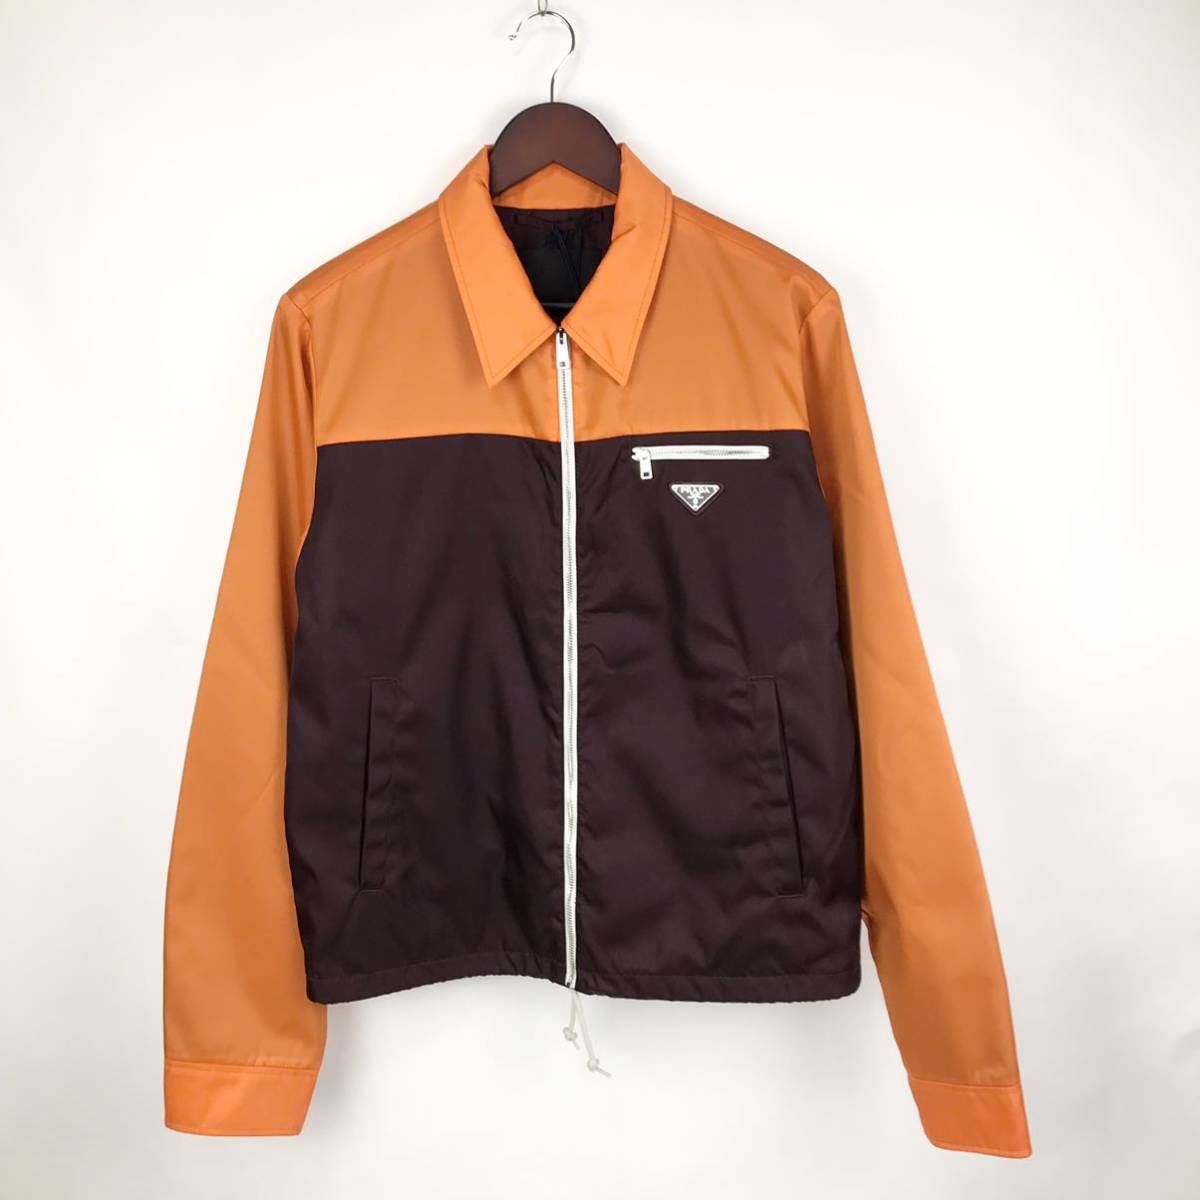 新品 PRADA プラダ ジャケット ブルゾン アウター タグ付き 46 メンズ オレンジ ブラウン ナイロンジャケット